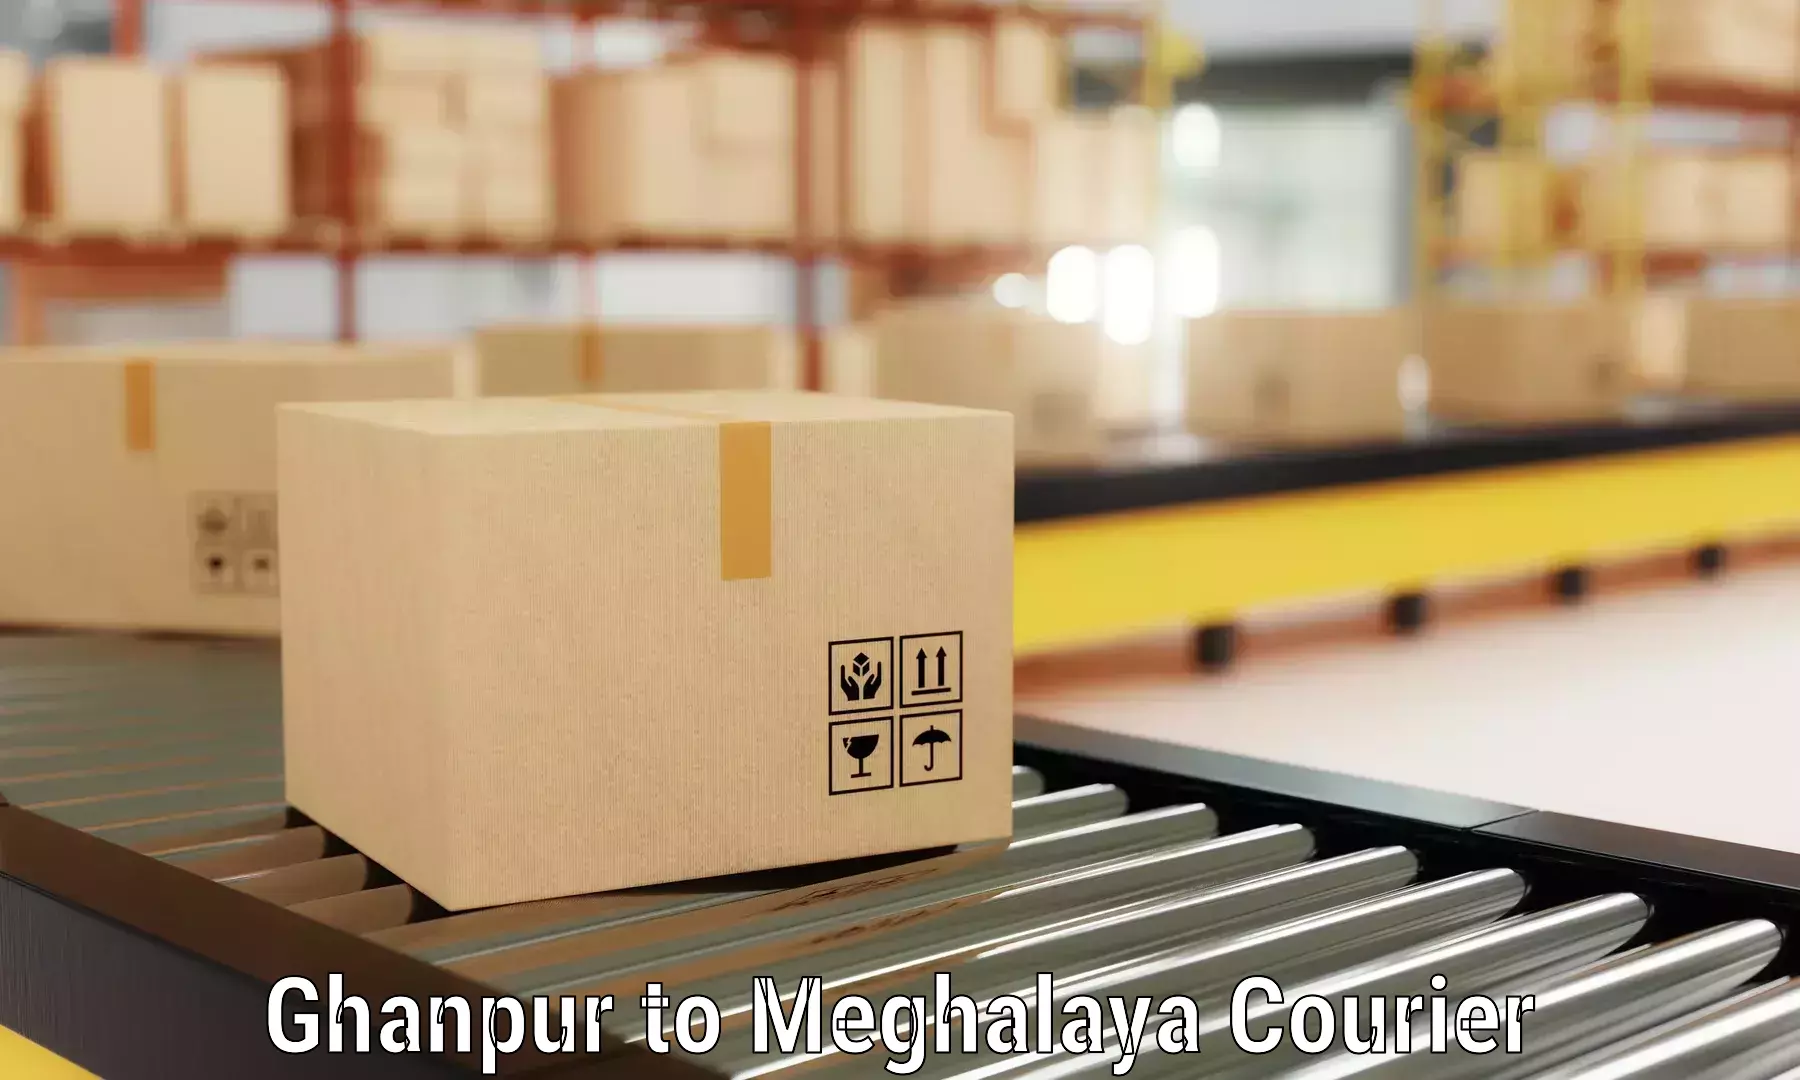 Full-service furniture transport in Ghanpur to Cherrapunji